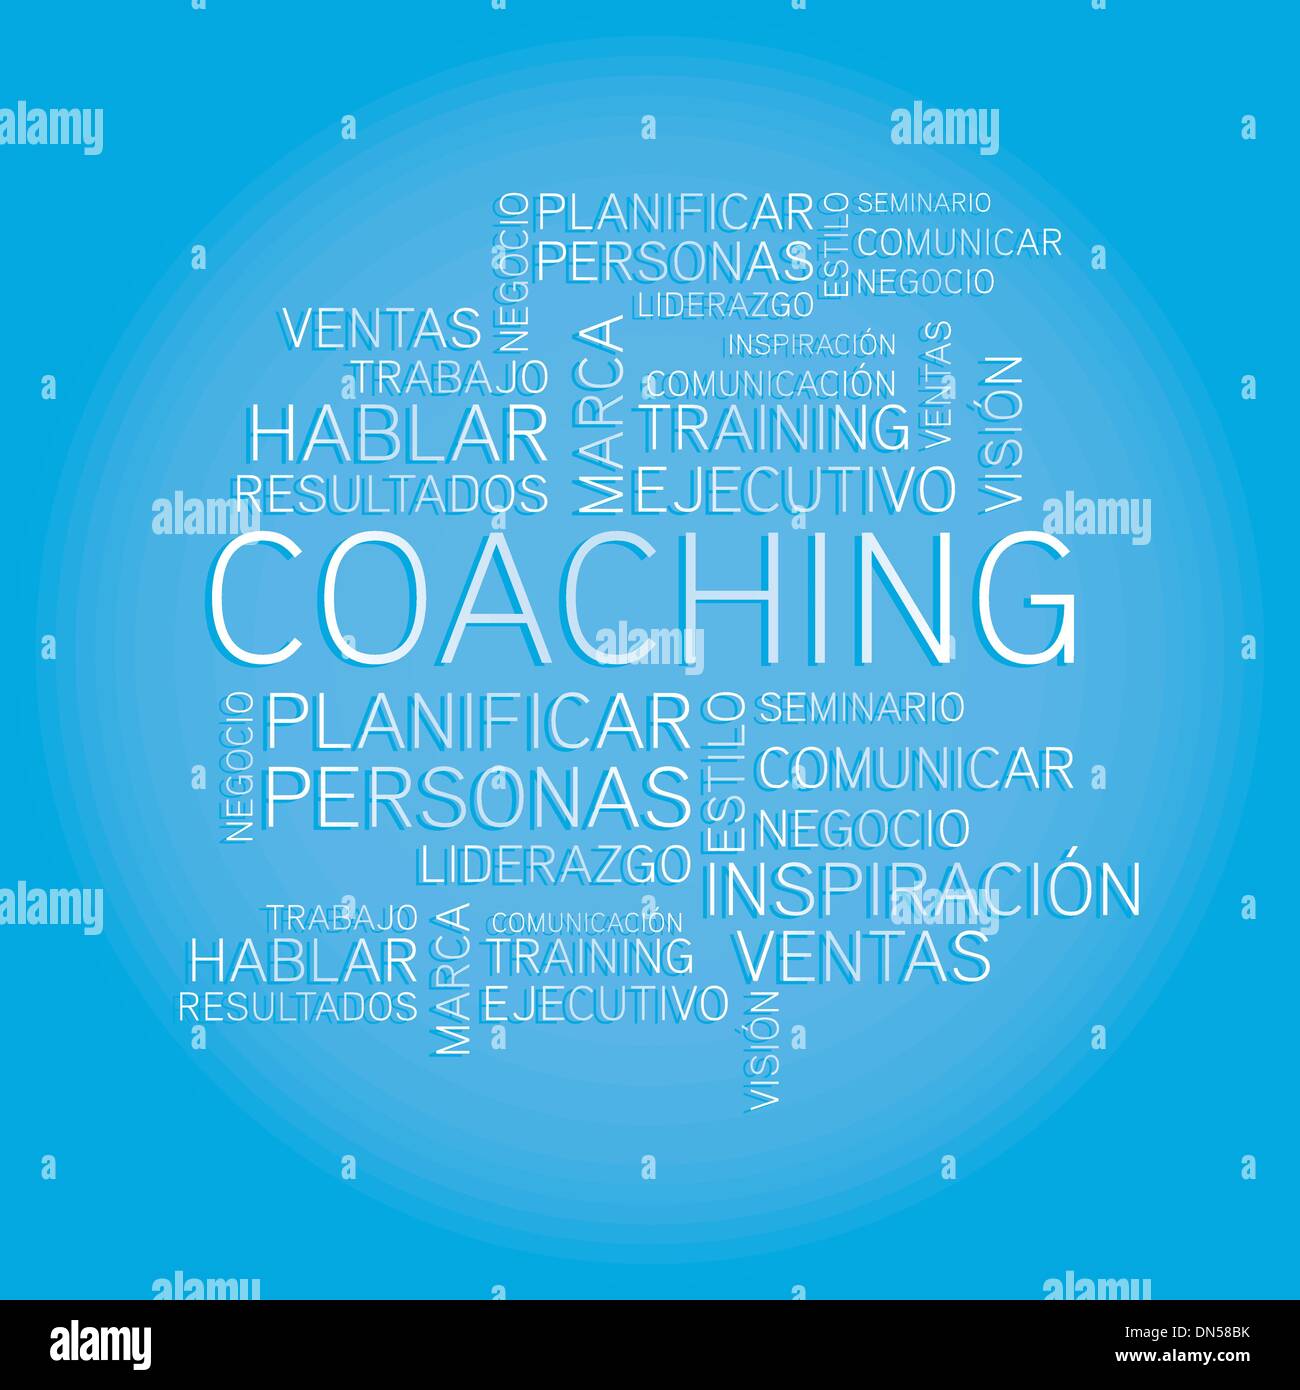 Coaching-Konzept Verwandte spanische Wörter im tag Stock Vektor